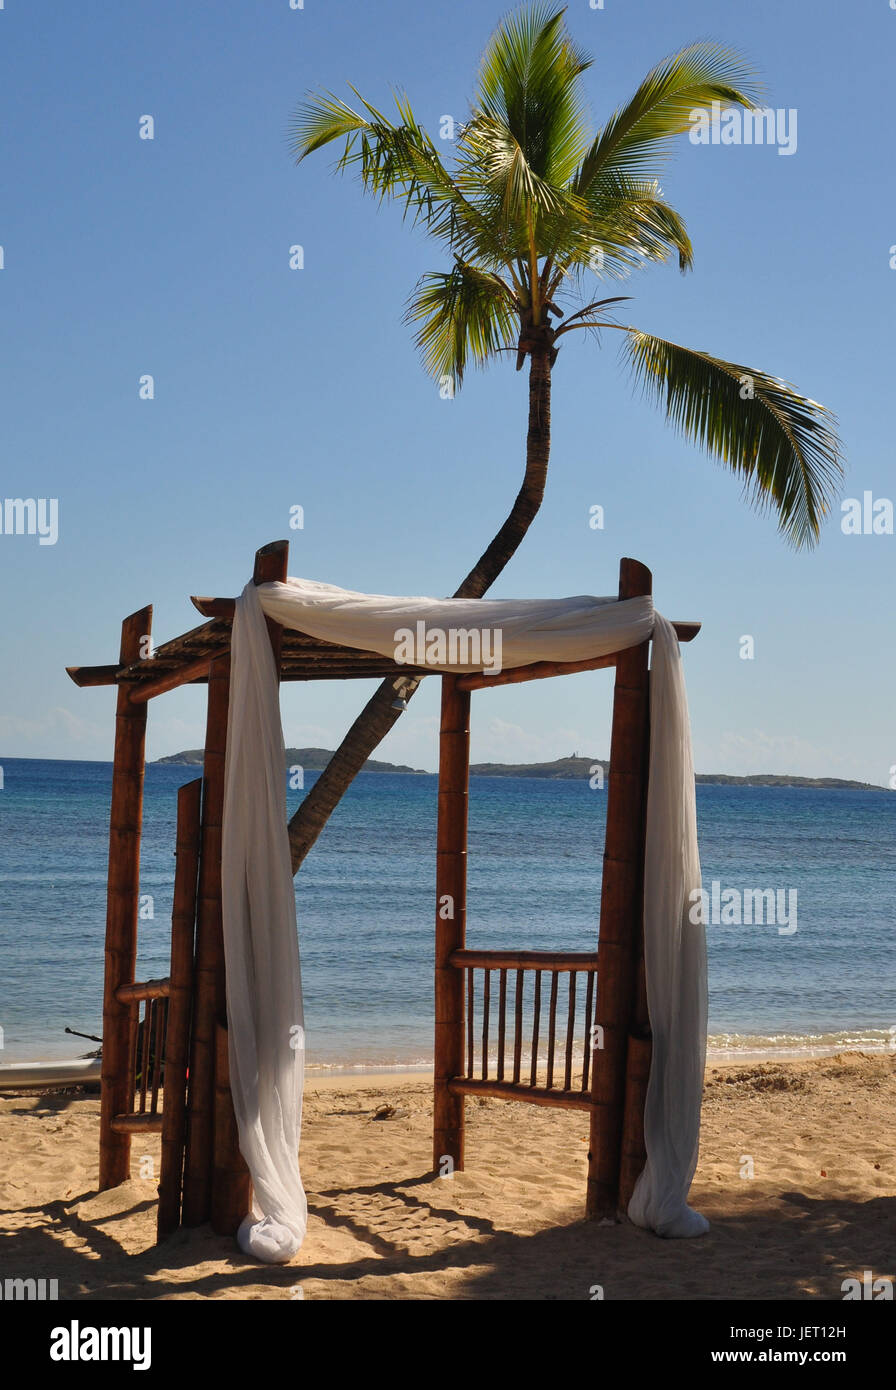 Arbor mariage drapé de tissu blanc situé sur la plage avec un palmier derrière elle. Banque D'Images